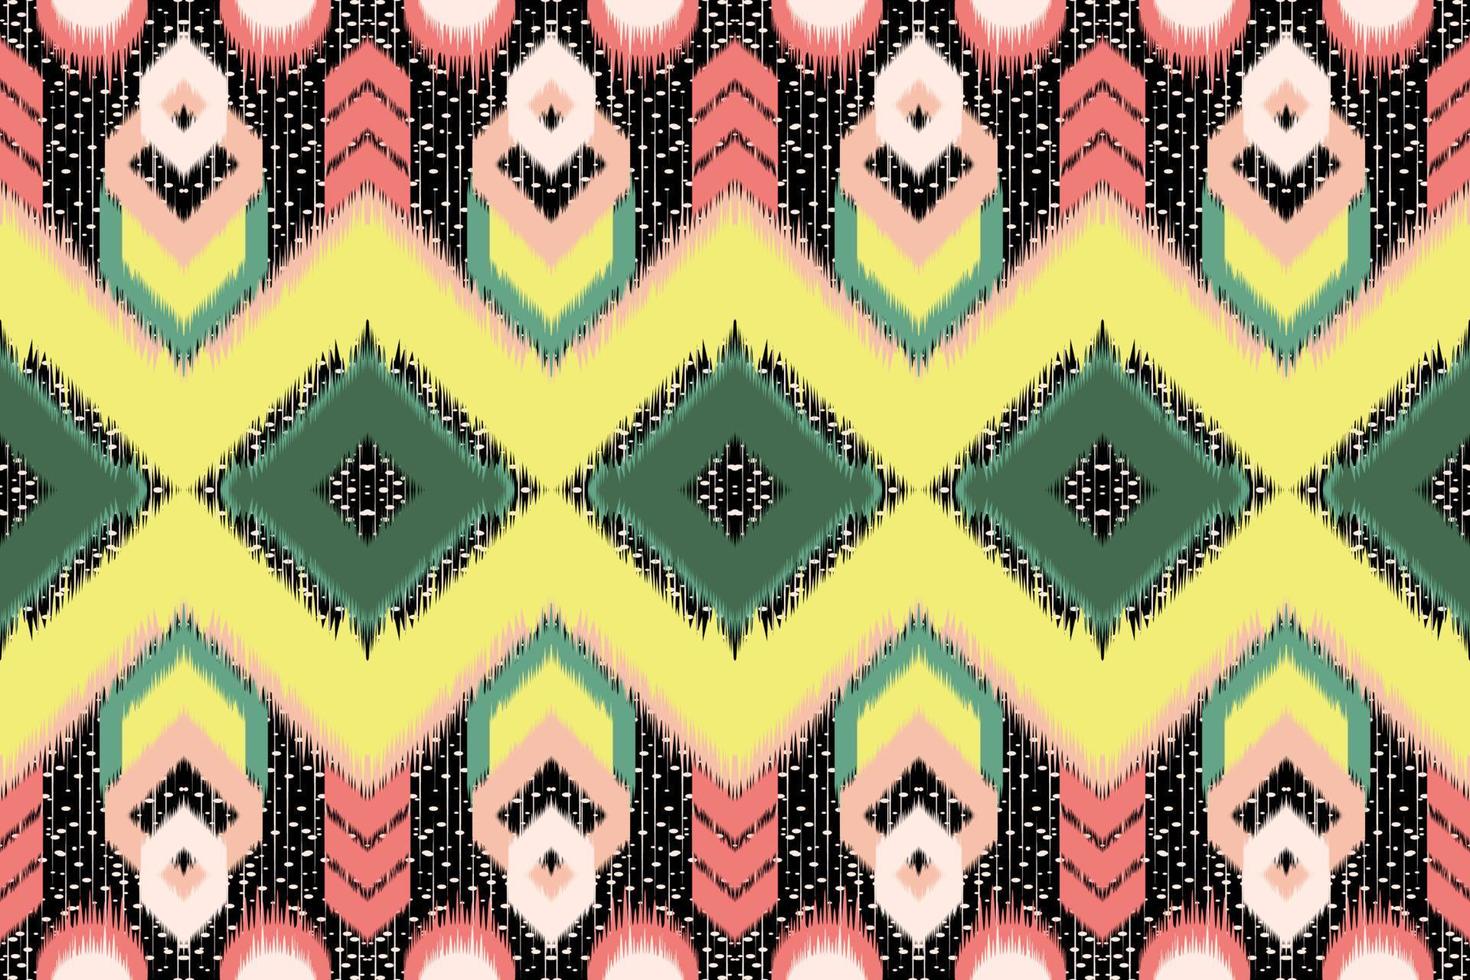 ikat étnica abstrata bela arte sem costura ikat tribal padrão folk bordado estilo mexicano asteca arte geométrica ornamento design de impressão para tapete, papel de parede. vetor